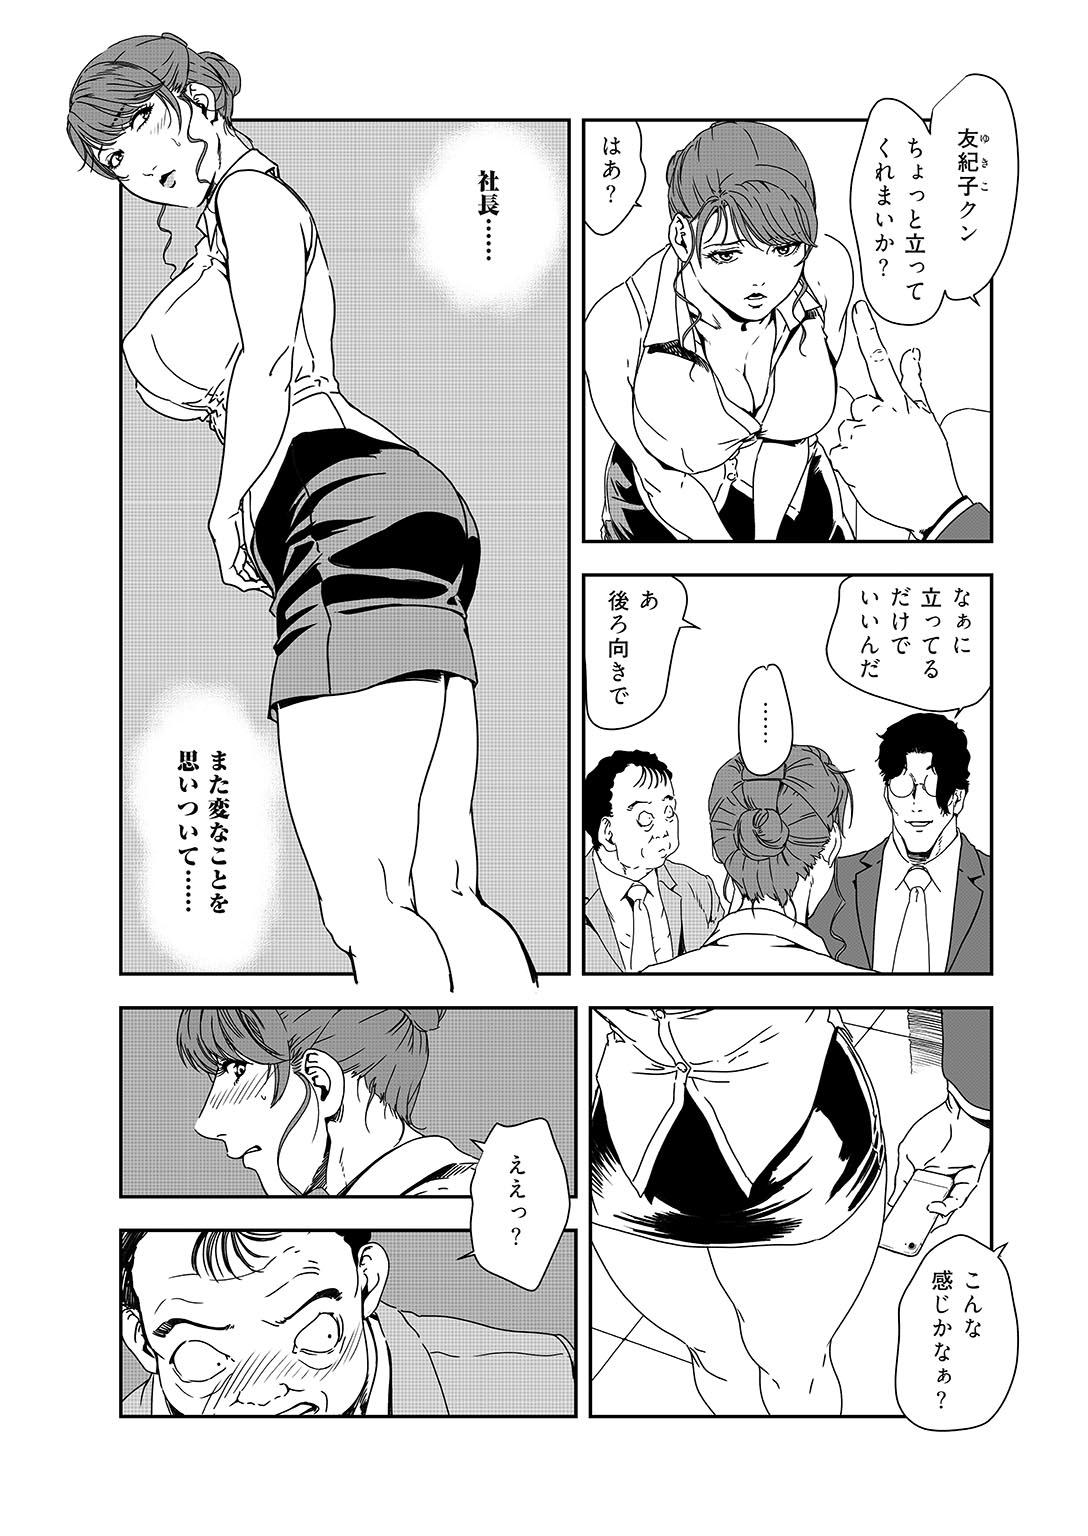 Sextoy Nikuhisyo Yukiko 38 Blow Jobs - Page 8